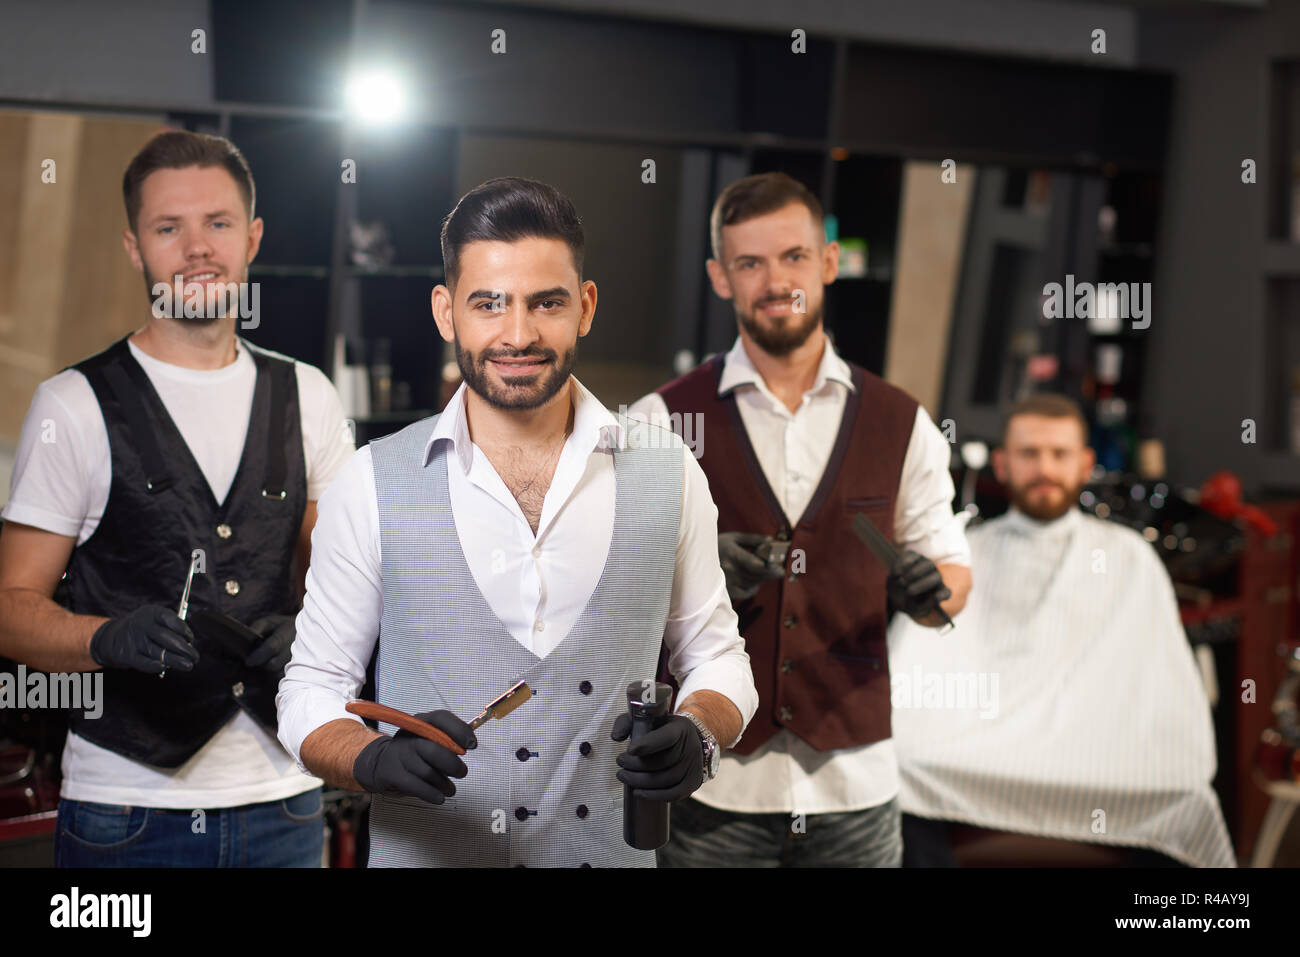 Team von professionellen Friseure stehend, auf Kamera und in der Friseur  posieren. Baum stilvolle brutale Männer halten Rasiermesser und Scheren.  Konzept der Haarschnitt und eine Rasur Stockfotografie - Alamy